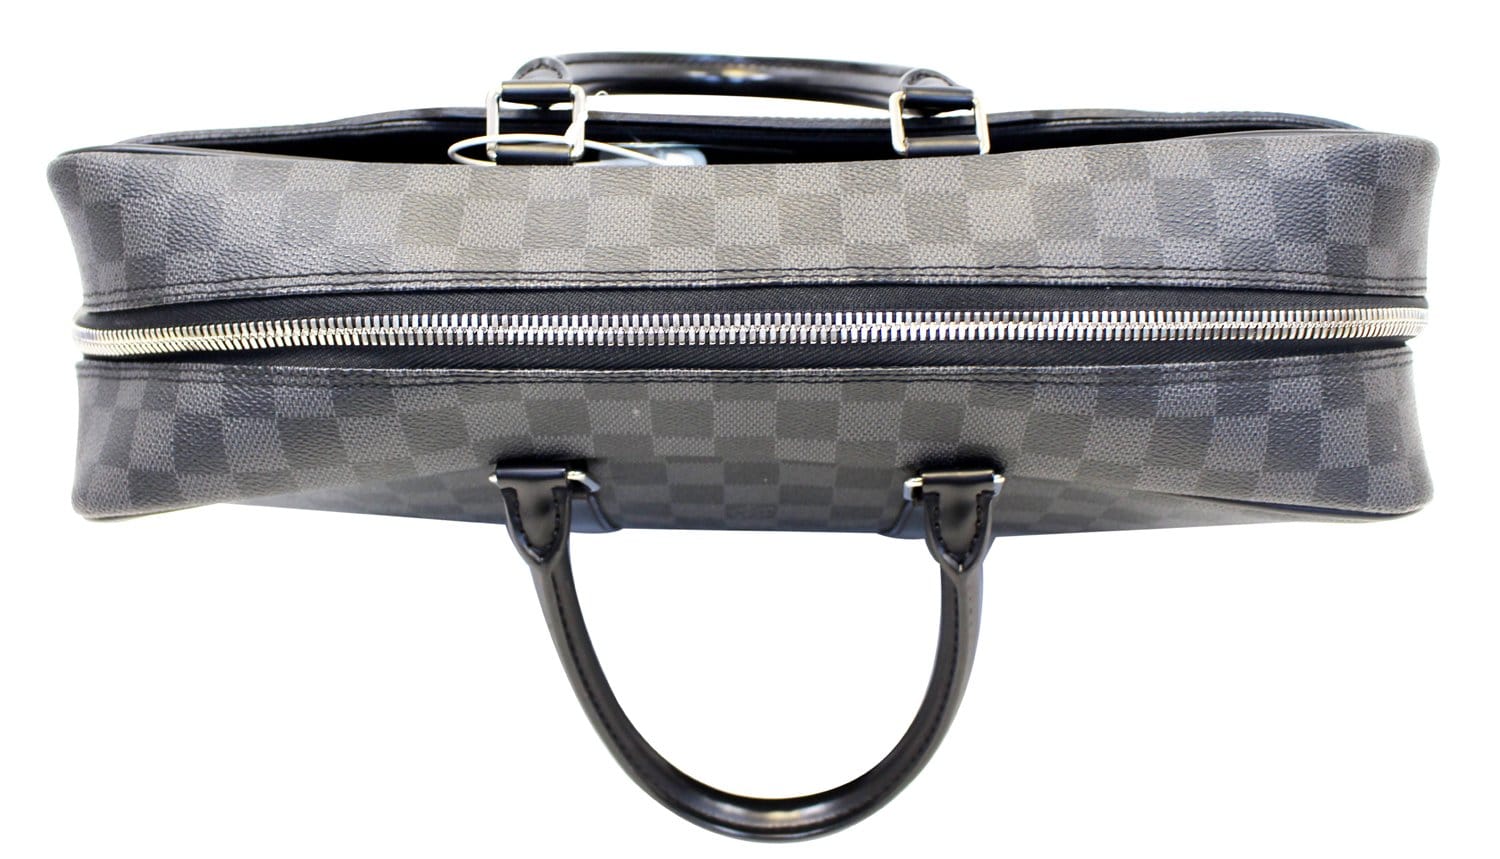 Louis Vuitton Porte Documents Voyage GM Briefcase Bag